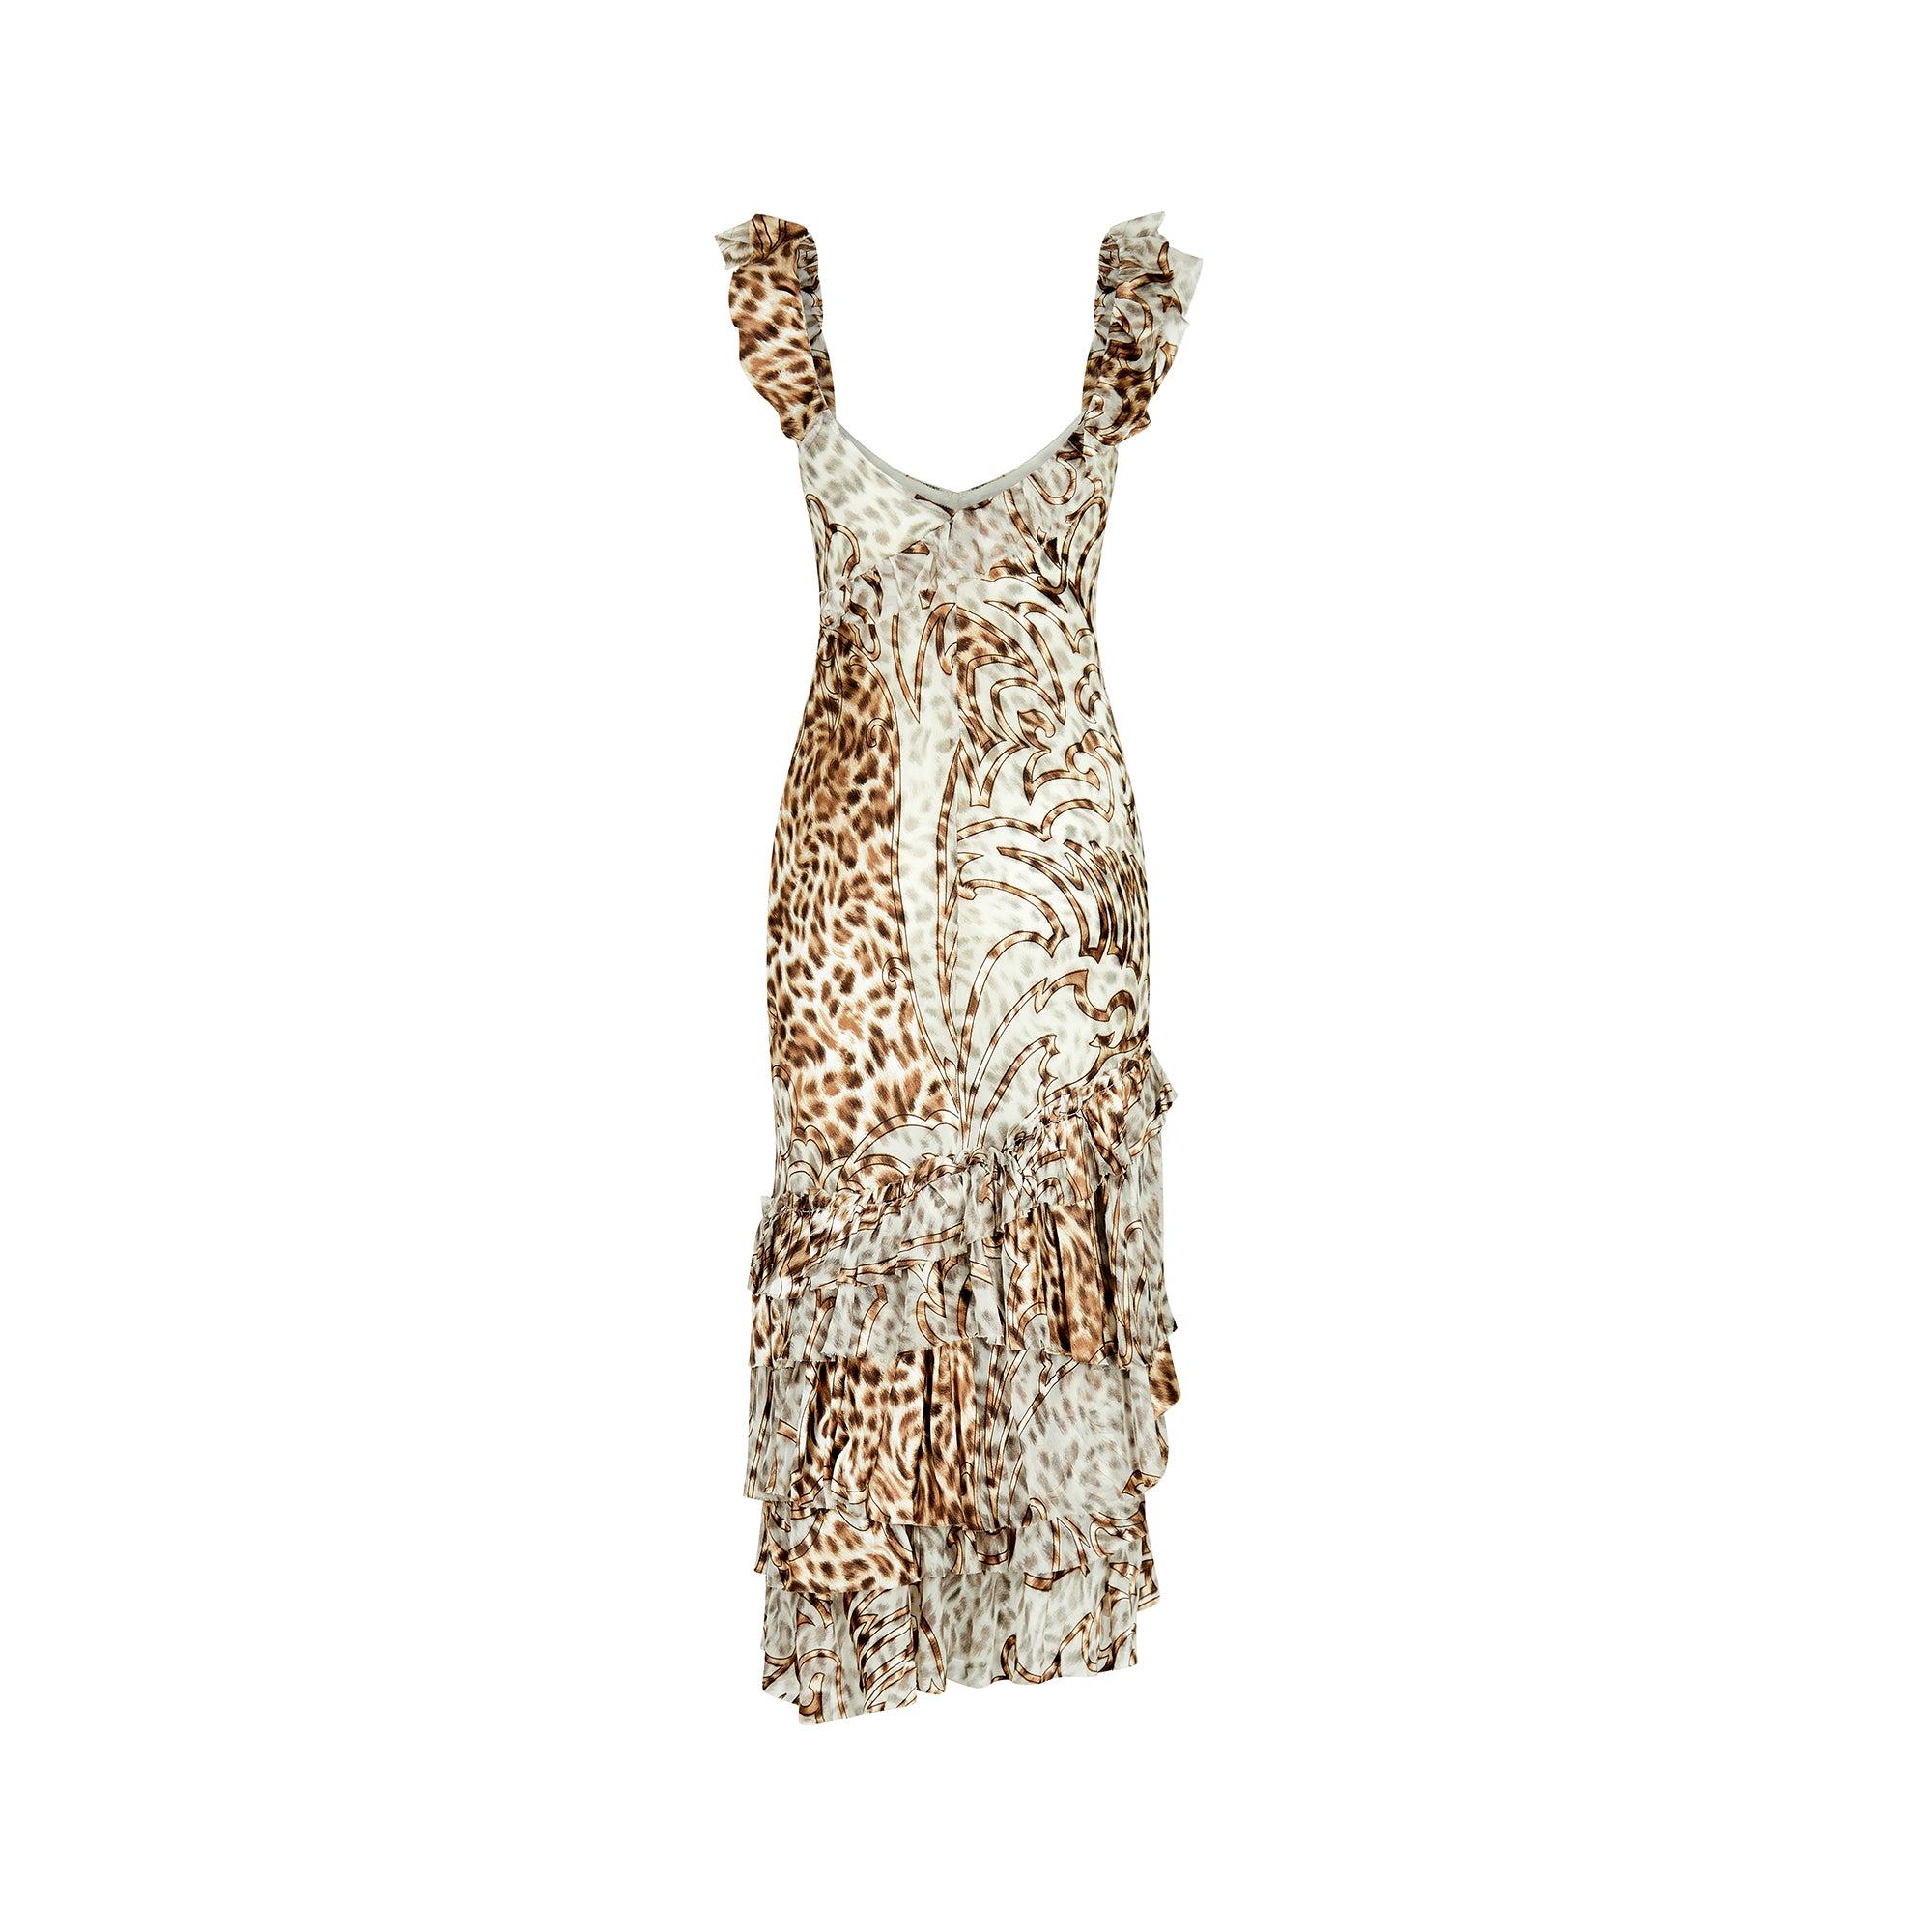 Le passage à l'an 2000 coûte cher ! Leopard Print Ruffled Bias Cut Dress Excellent état - En vente à London, GB